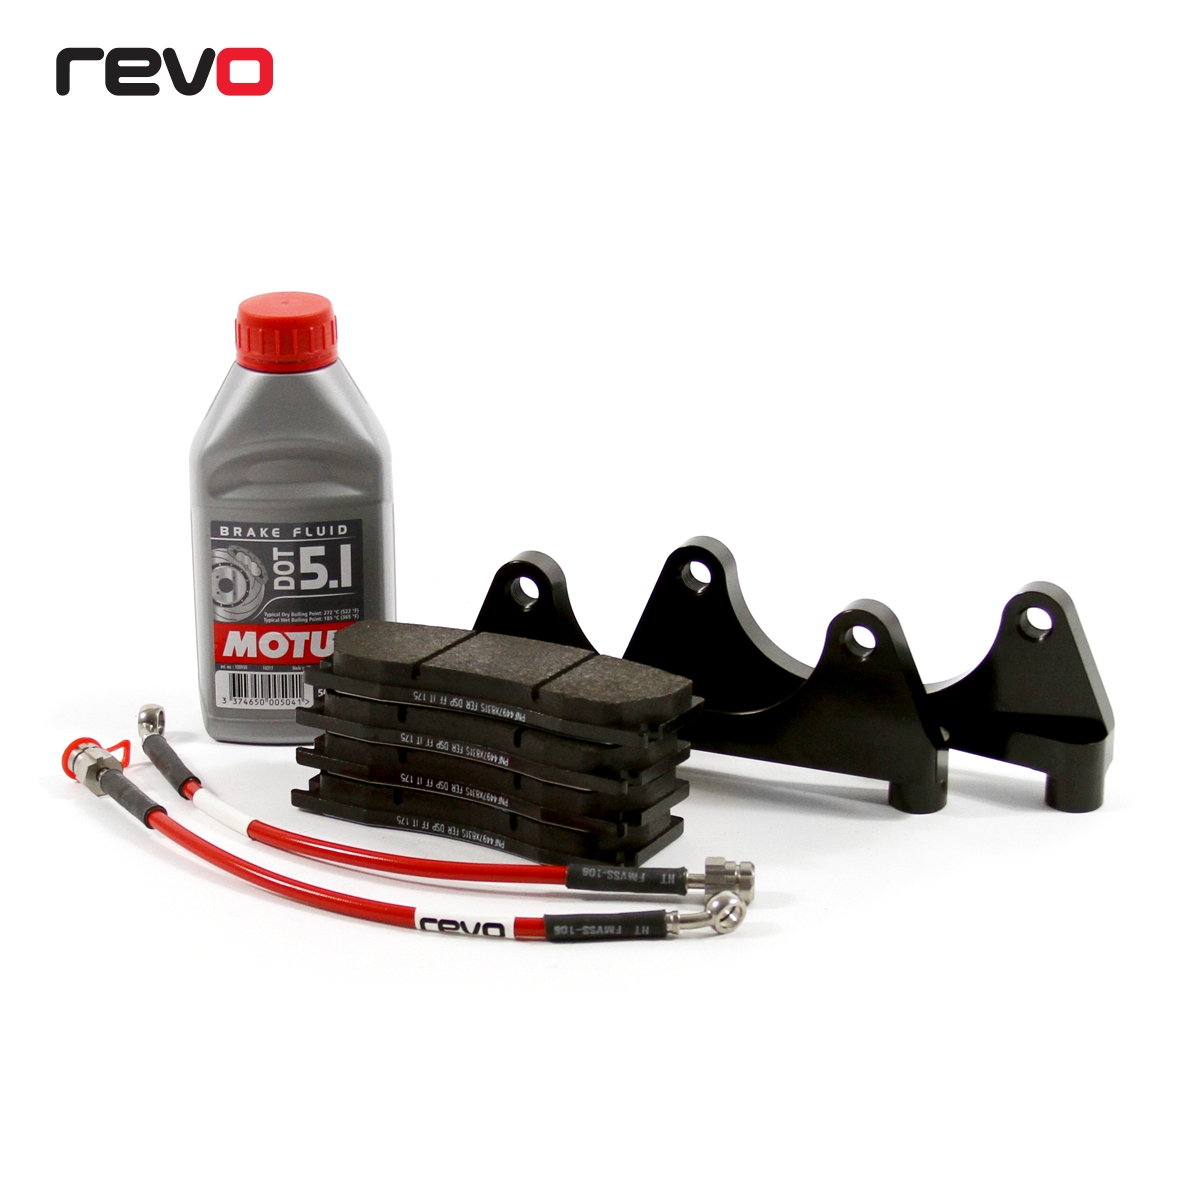 Revo Big Brake Kit Audi S1 332 x 28mm